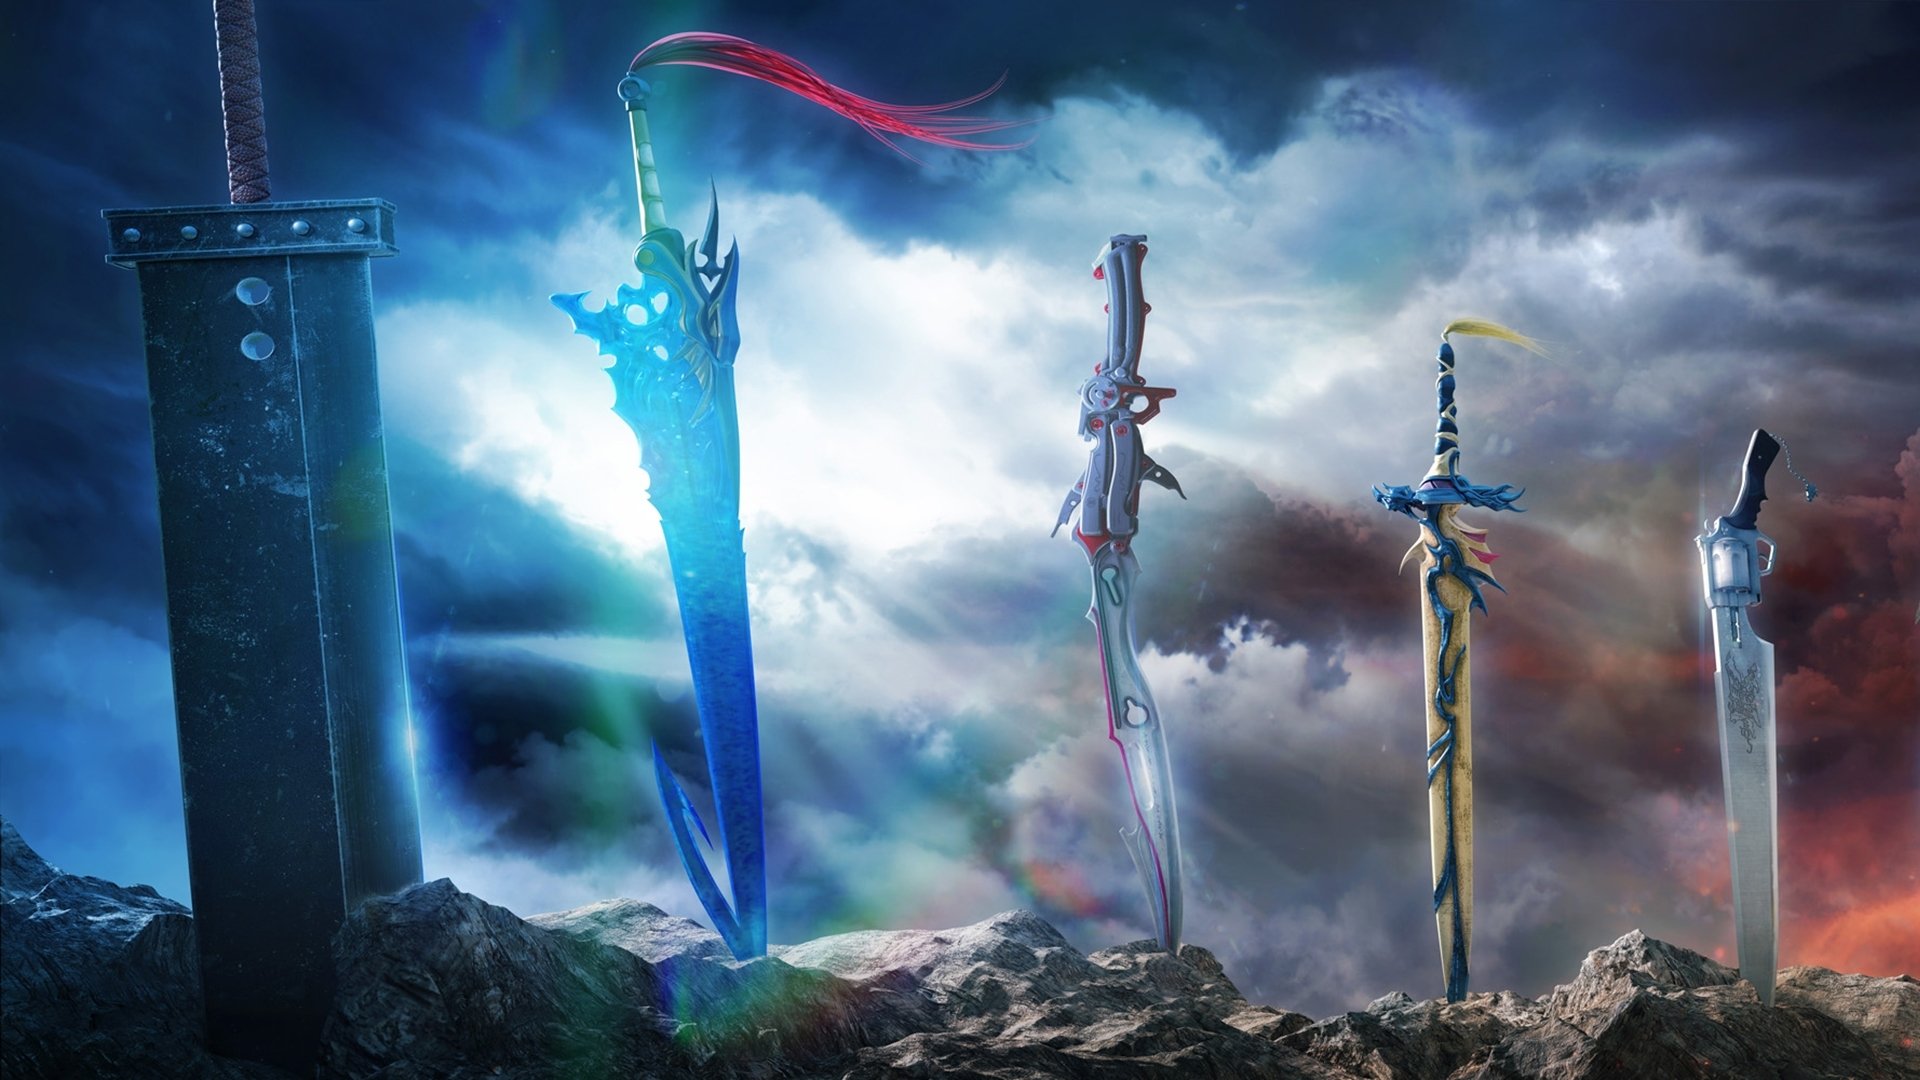 Wallpaper night the city Final Fantasy VII Final fantasy 7 images for  desktop section игры  download